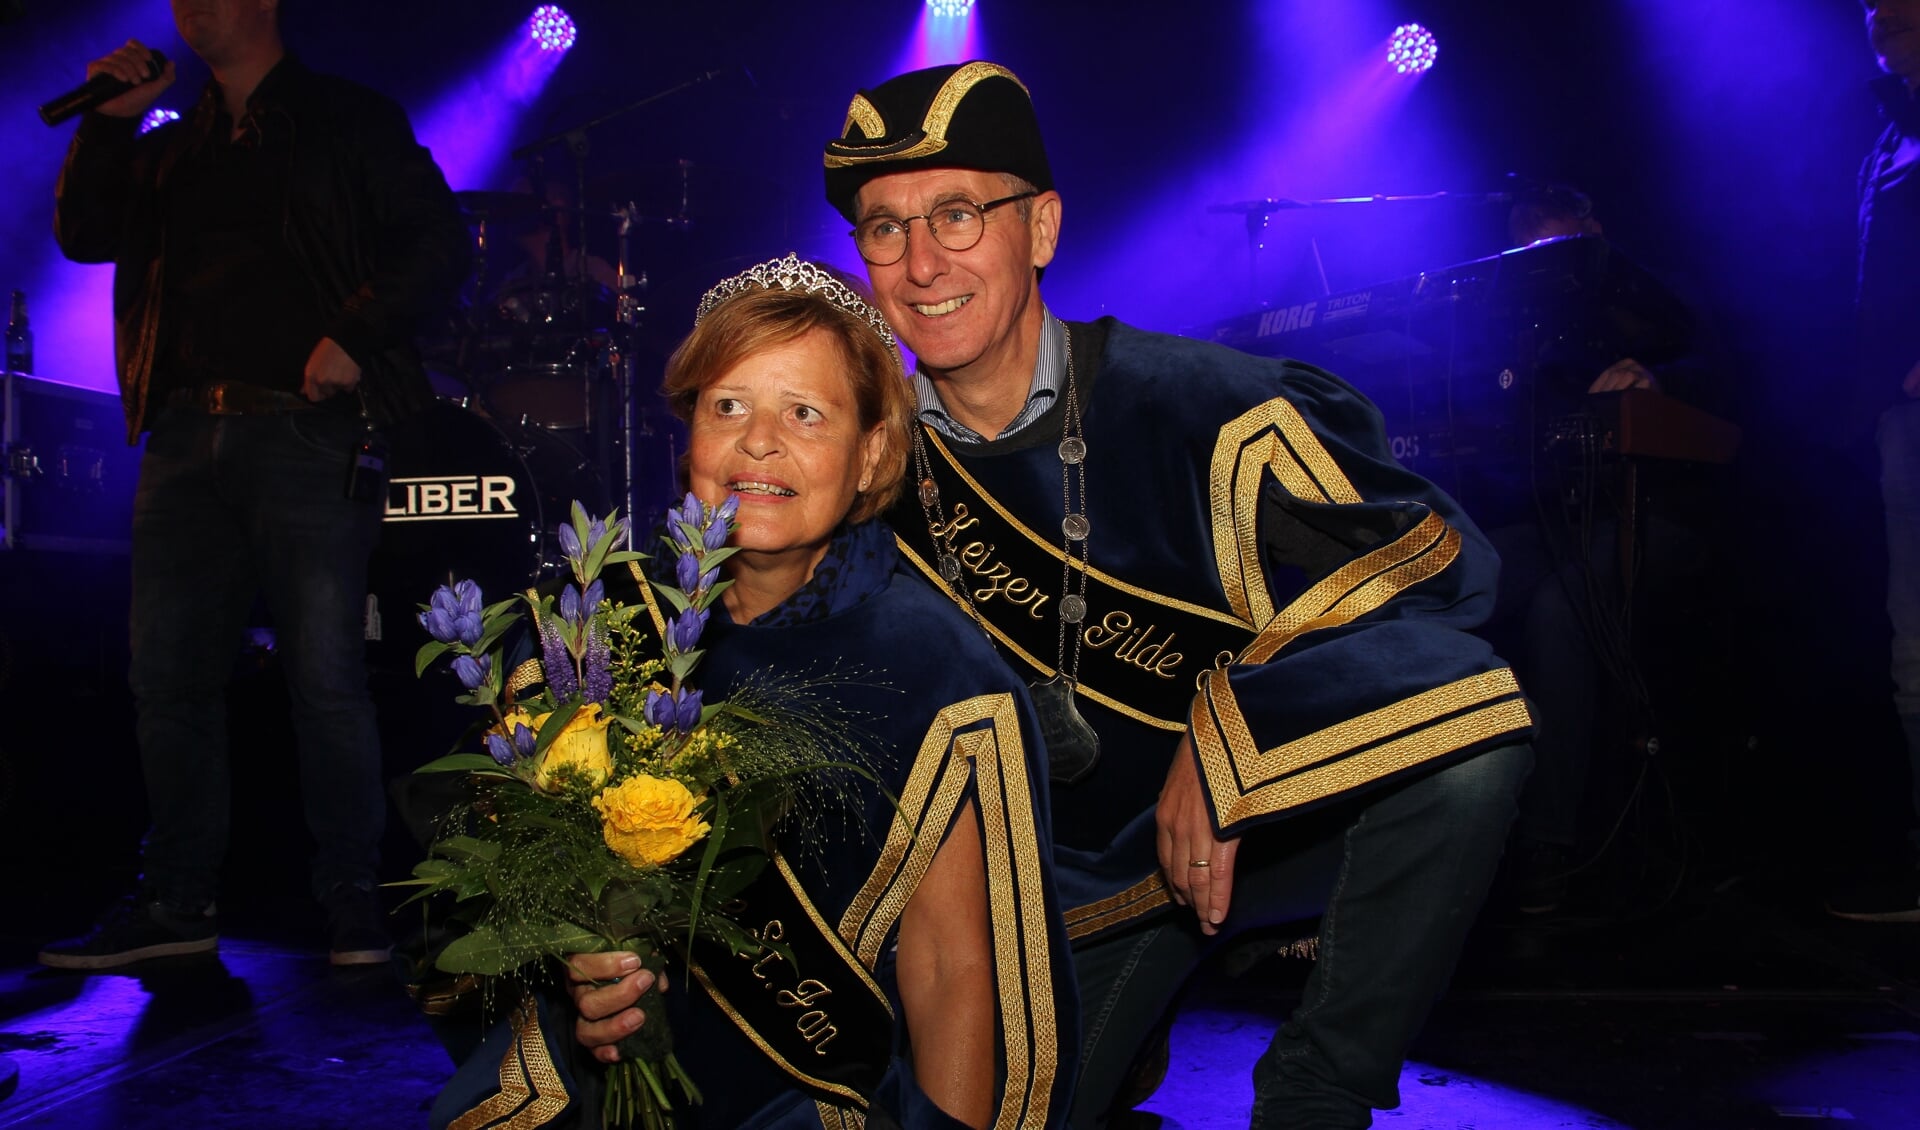 Keizerspaar van Keijenborg 2018 Caroline en Ike Hennink werden gehuldigd en zijn voor vijf jaar ambassadeur van het Schuttersgilde in Keijenborg. Foto: Liesbeth Spaansen